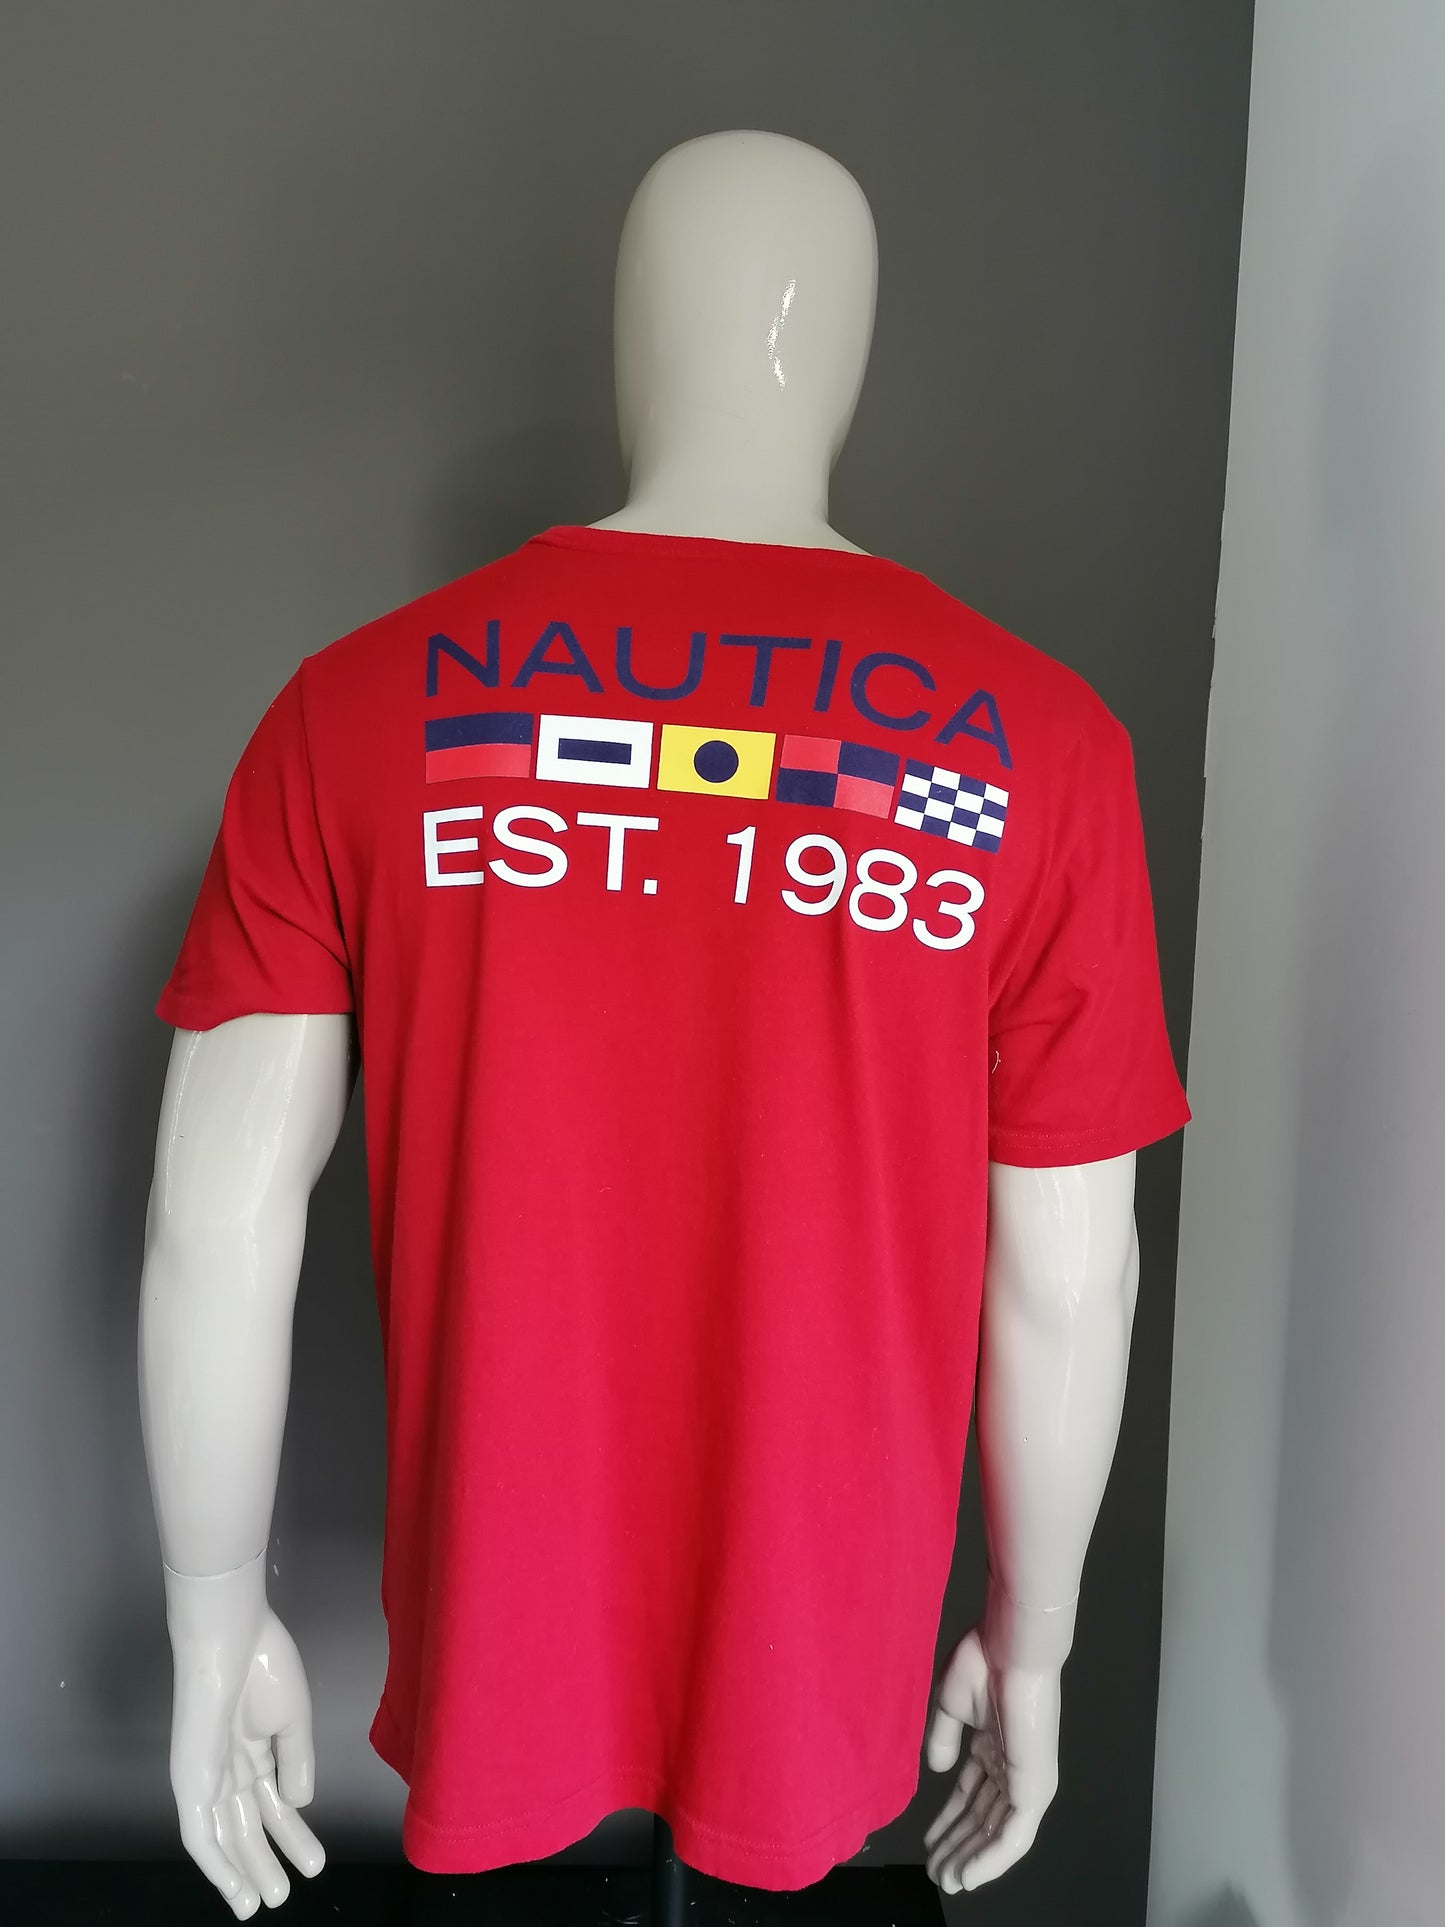 Camisa de Nautica. Rojo con impresión. Talla L.